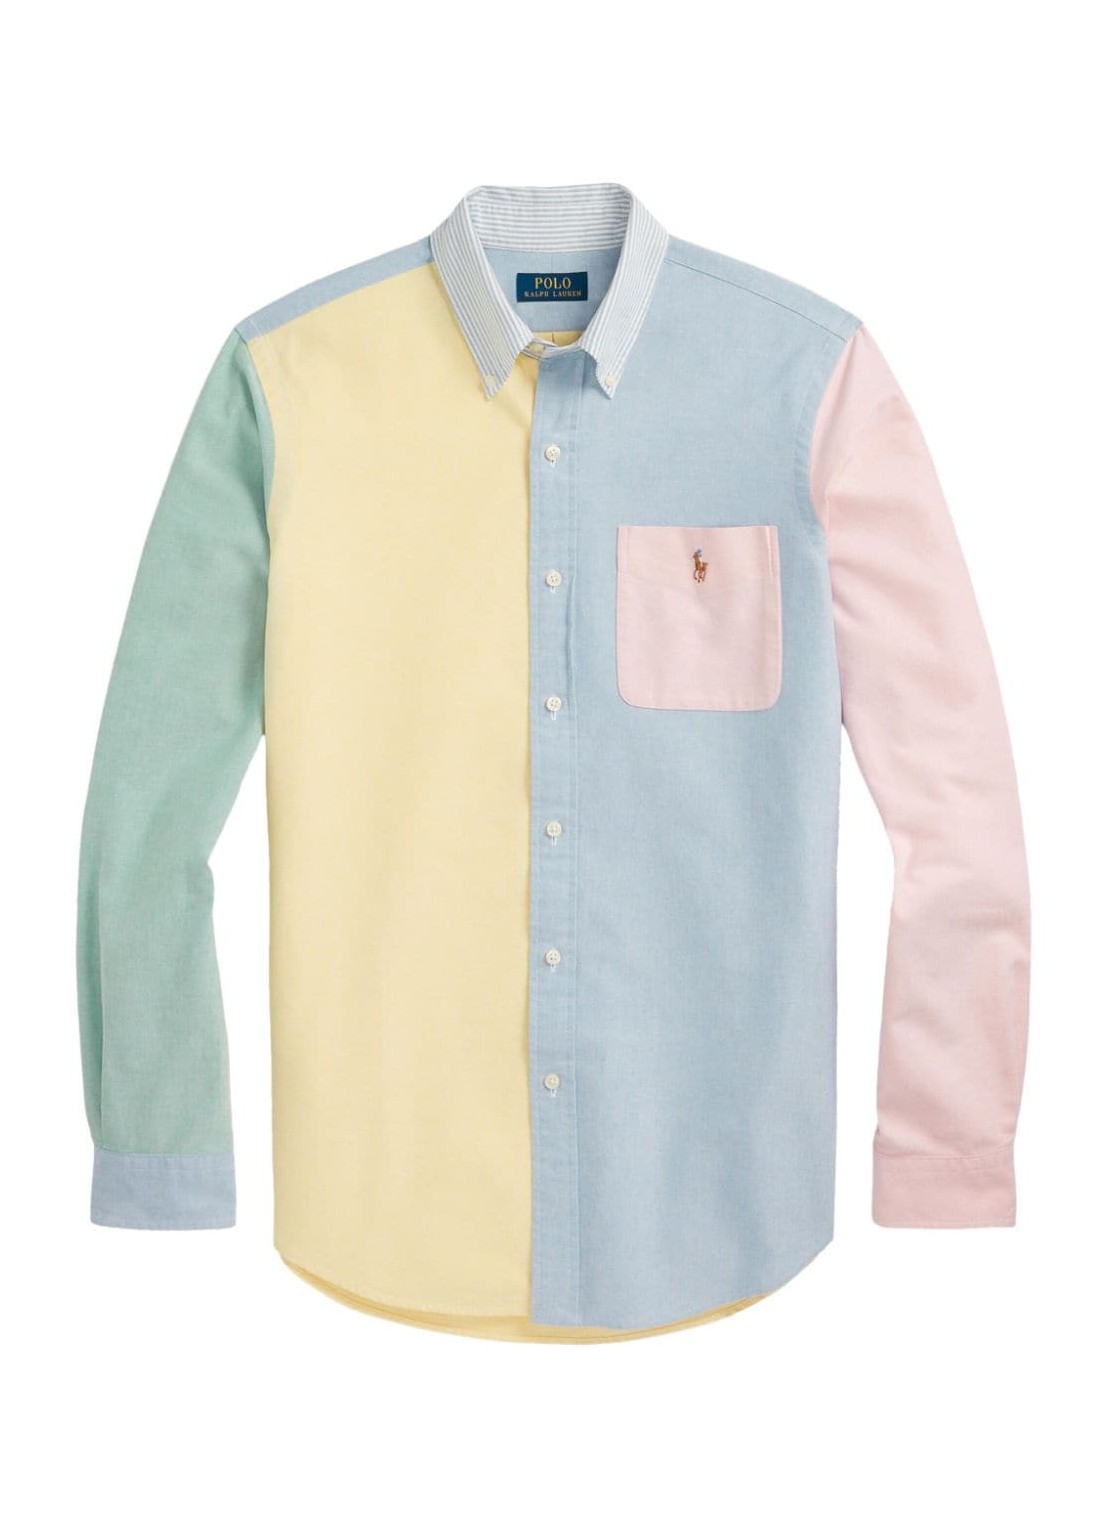 Camiseria polo ralph lauren shirt man cubdpppks-long sleeve-sport shirt 710928919001 4680 funshirt t